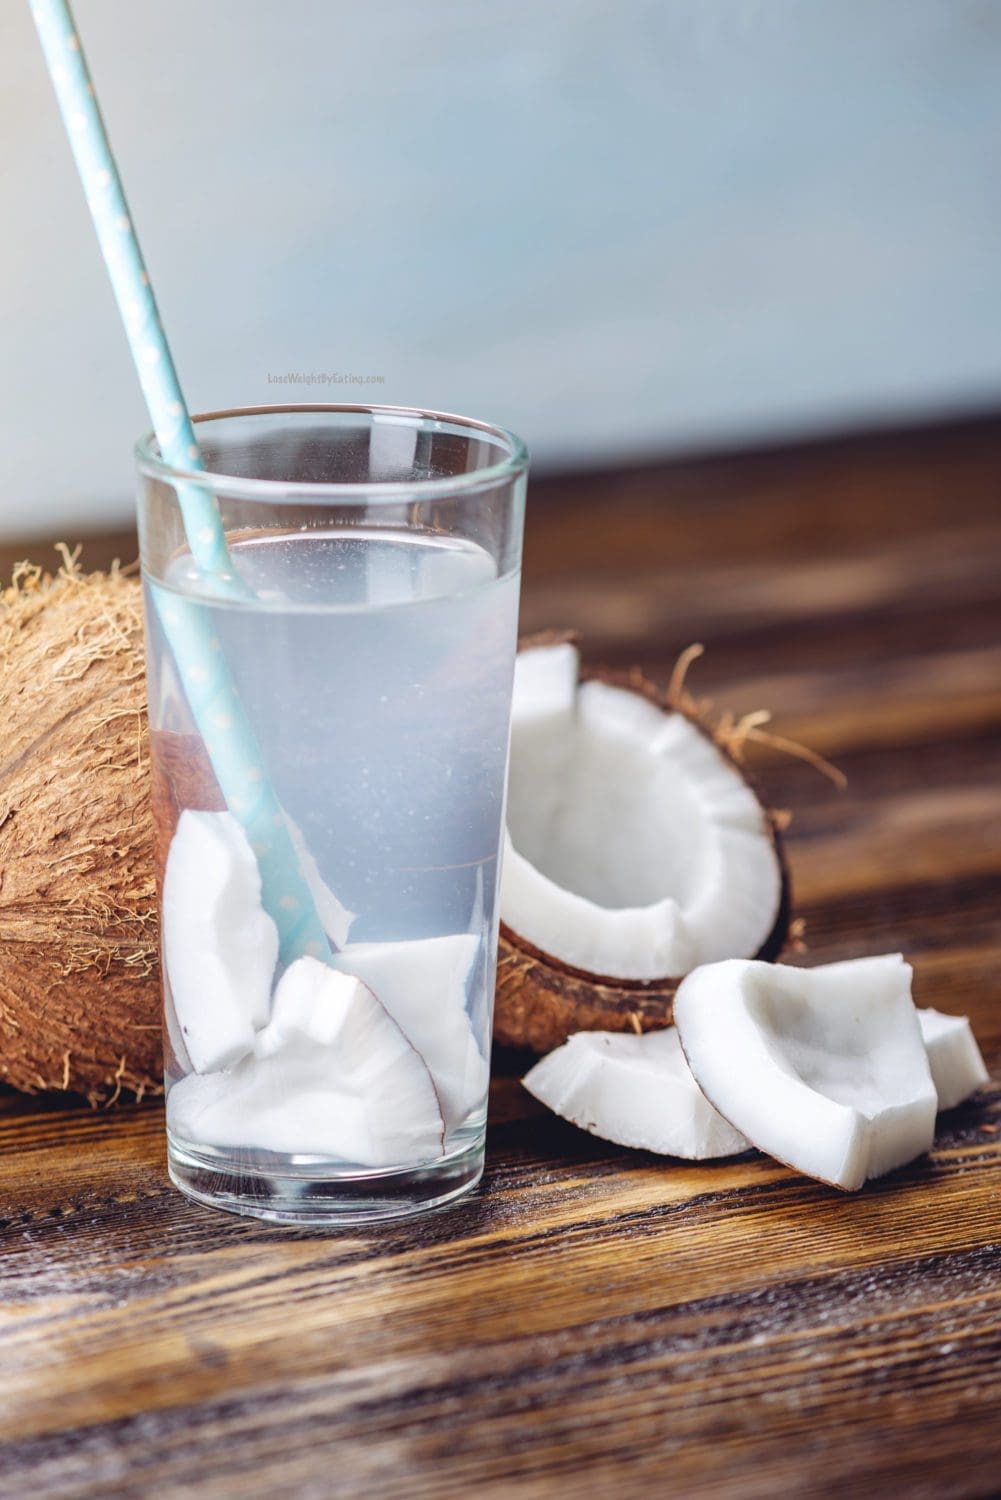 Top 5 Health Benefits of Coconut Water